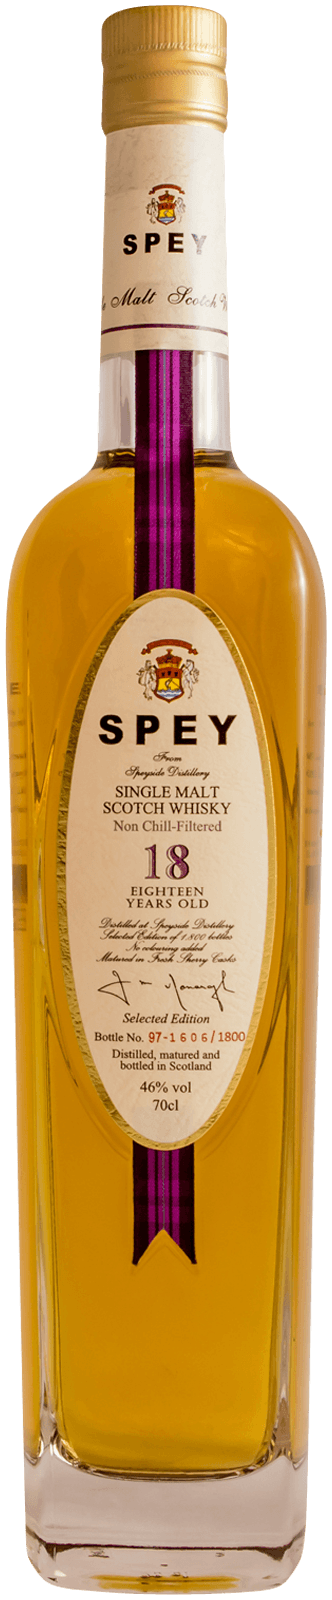 Spey 18yr Old Single Malt